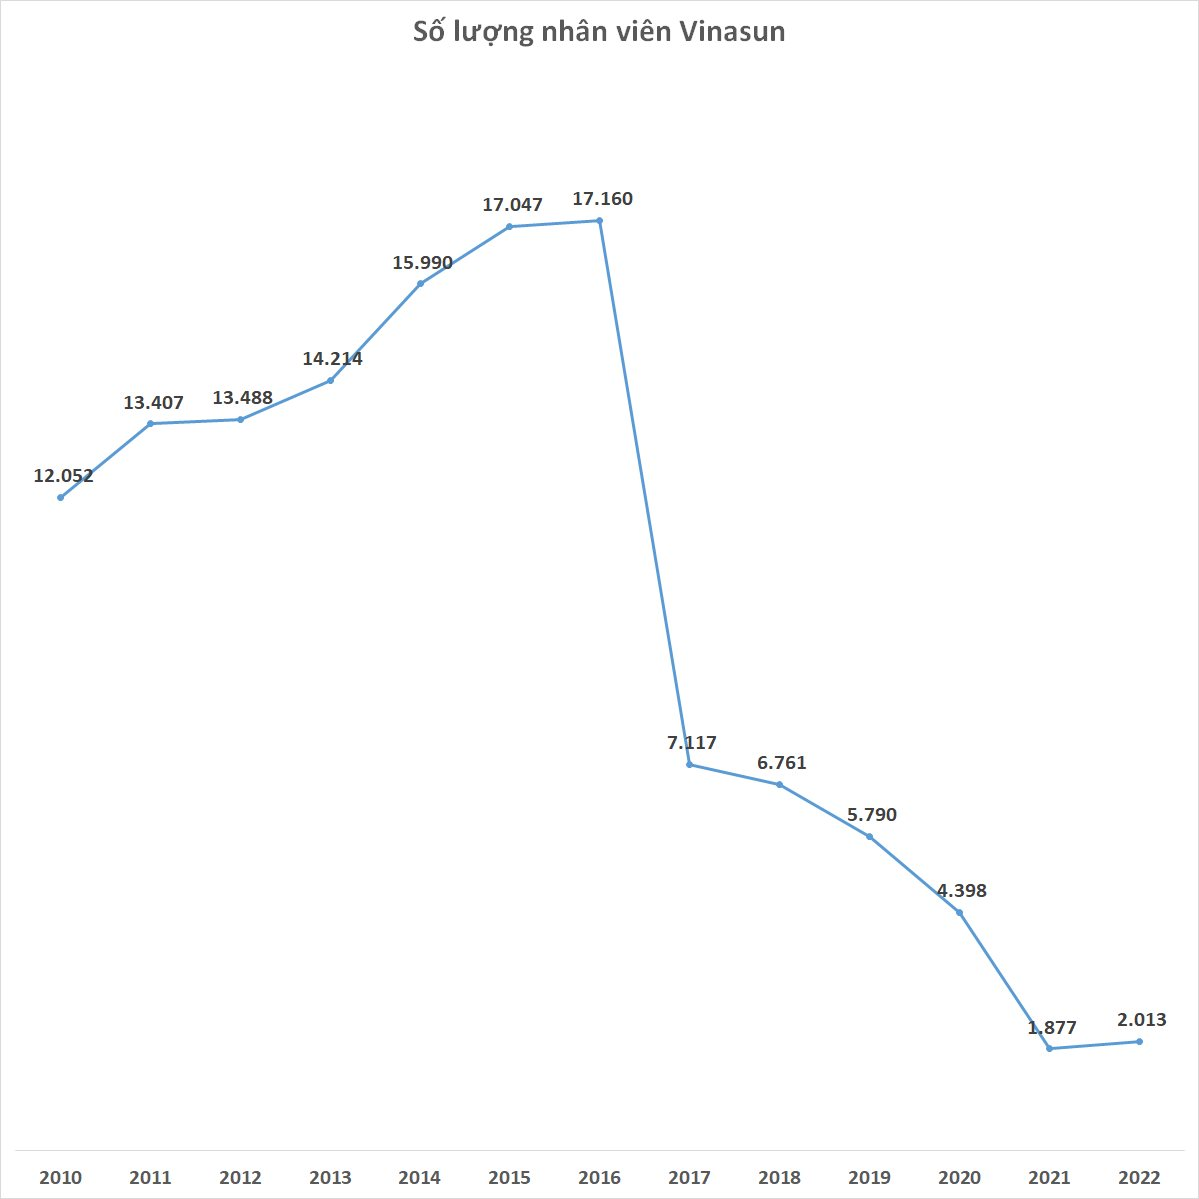  Vinasun lần đầu tiên tuyển người trở lại sau khi cắt giảm 15.000 nhân sự trong 5 năm  - Ảnh 1.